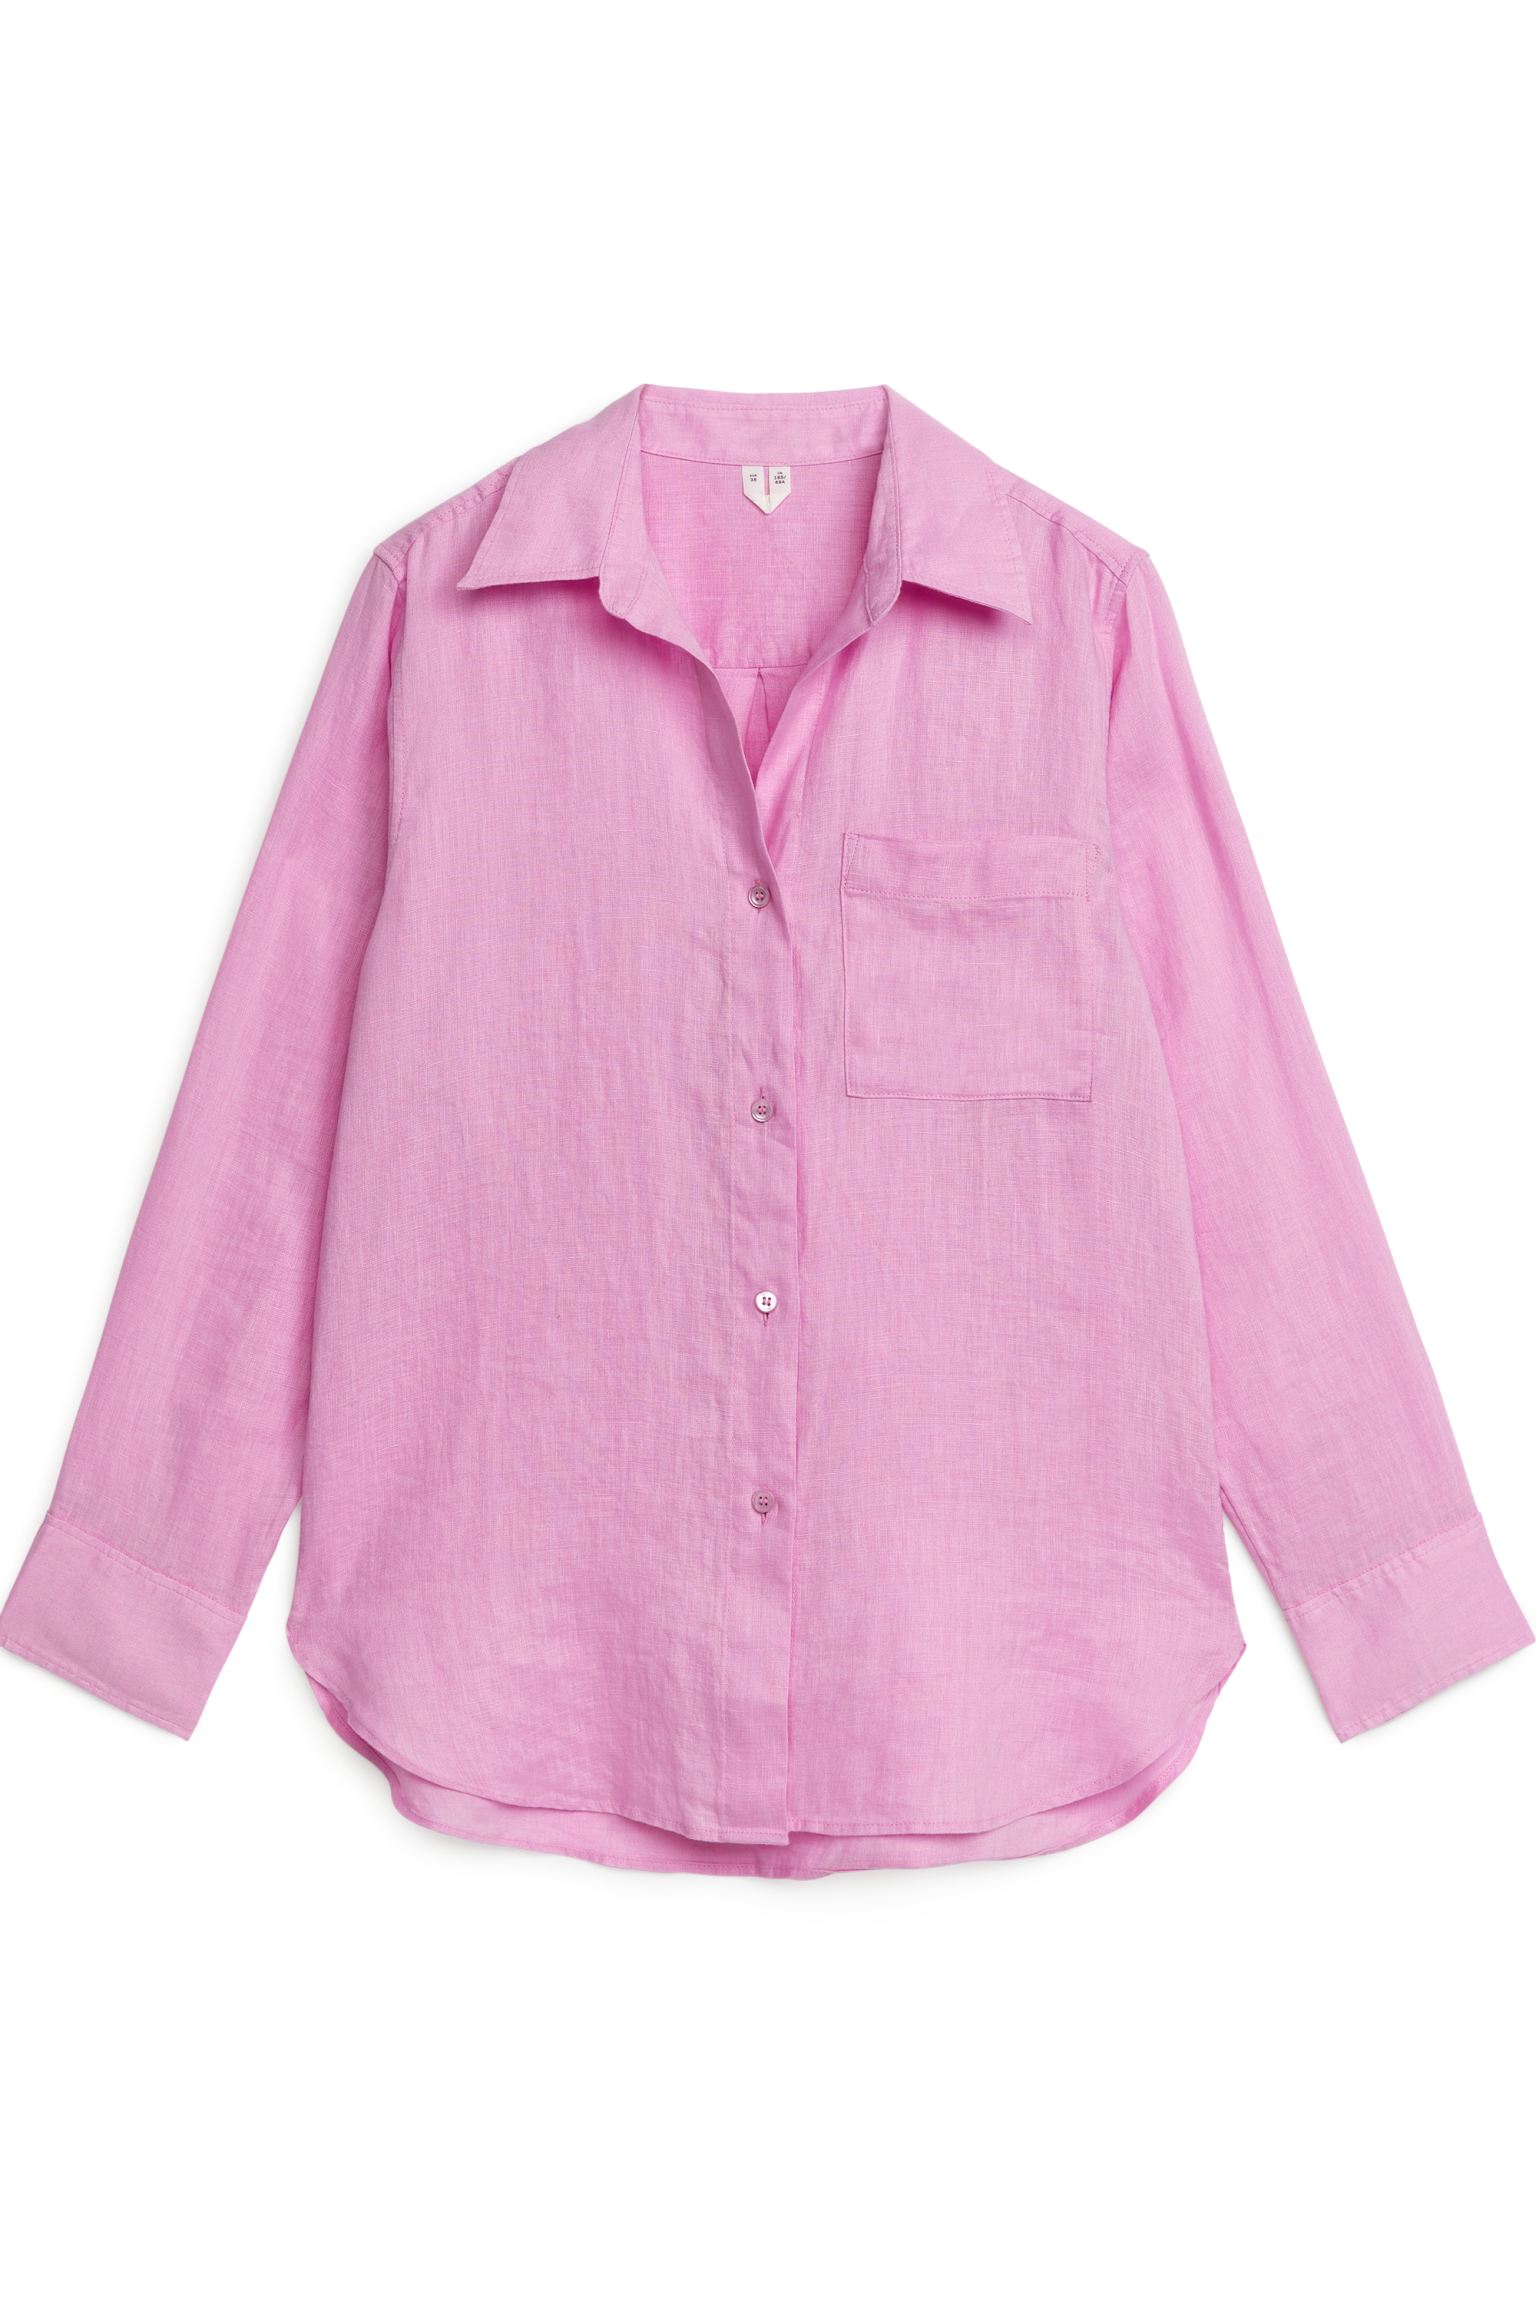 Рубашка женская ARKET 1078516015 розовая 36 (доставка из-за рубежа)